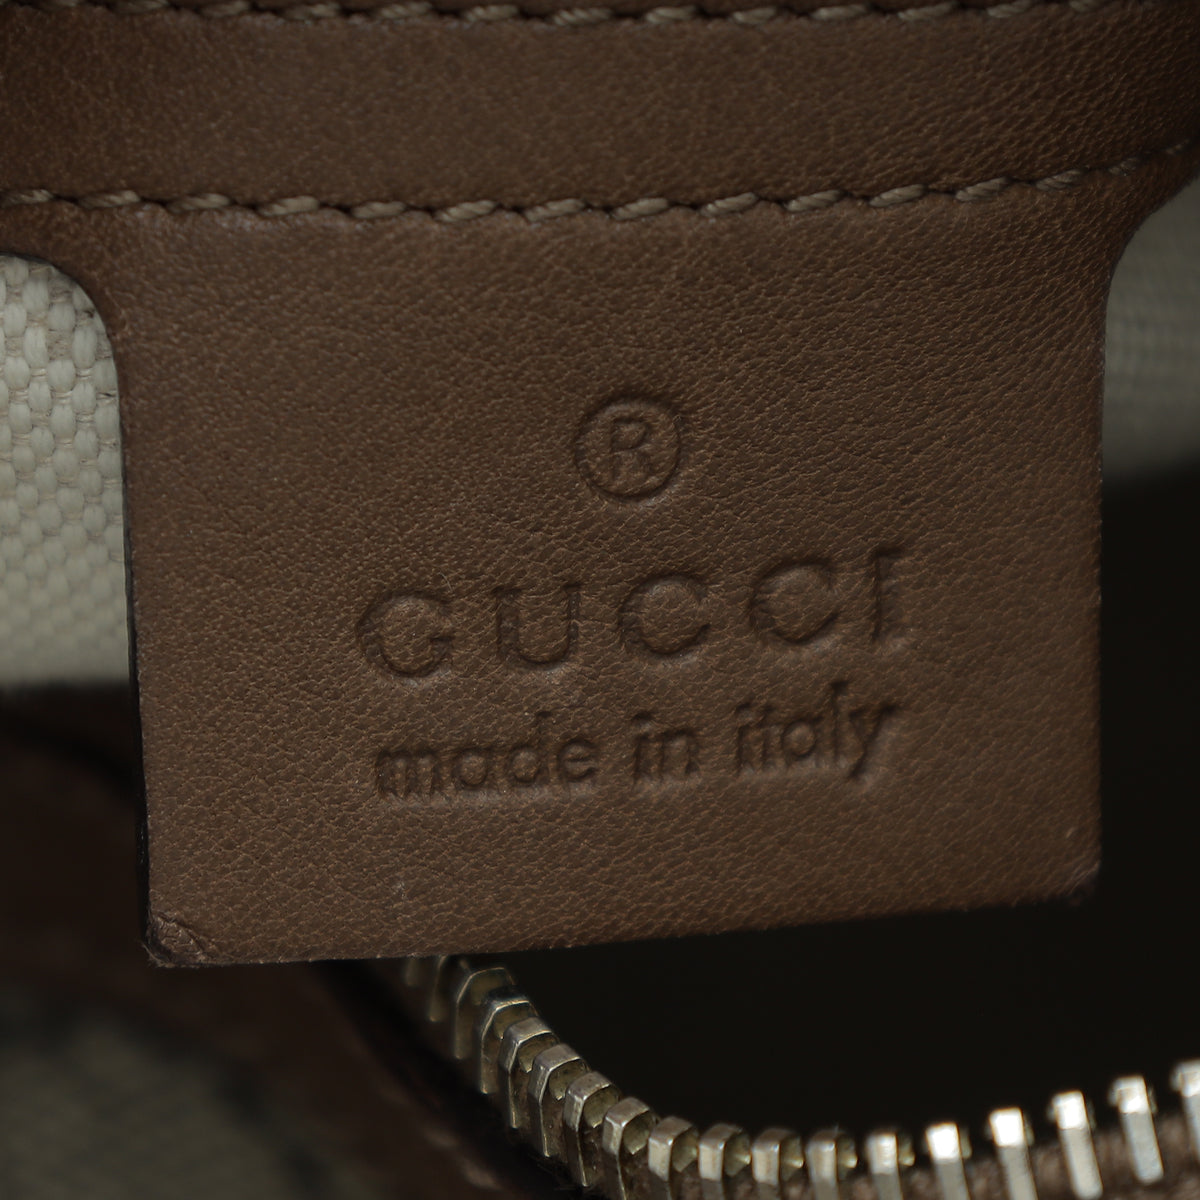 Gucci Bicolor GG Supreme Nice Medium Boston Bag – The Closet